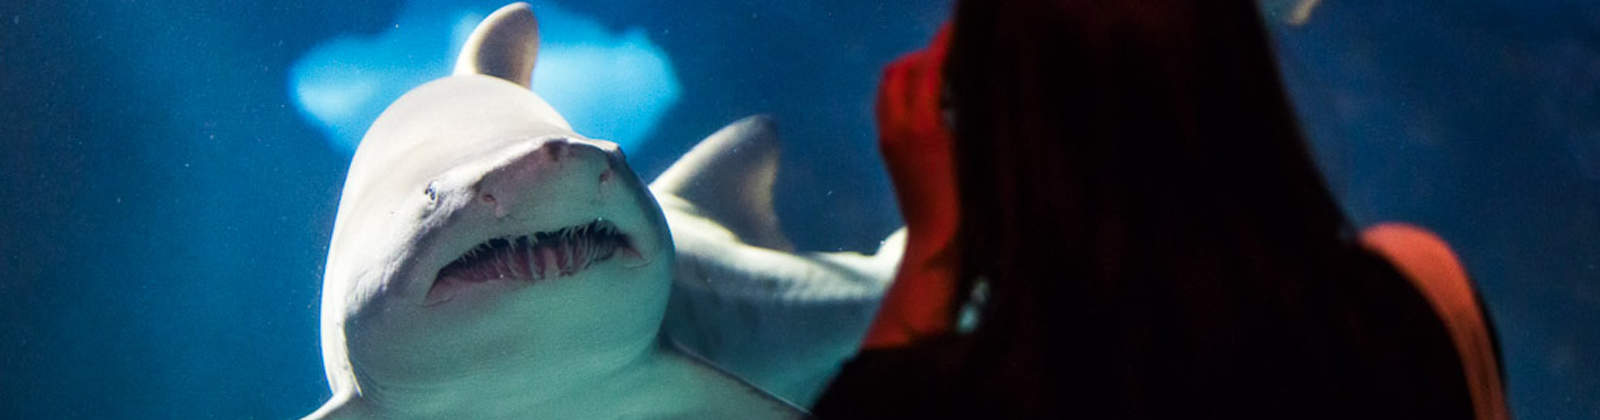 Looking at Shark at Greater Cleveland Aquarium